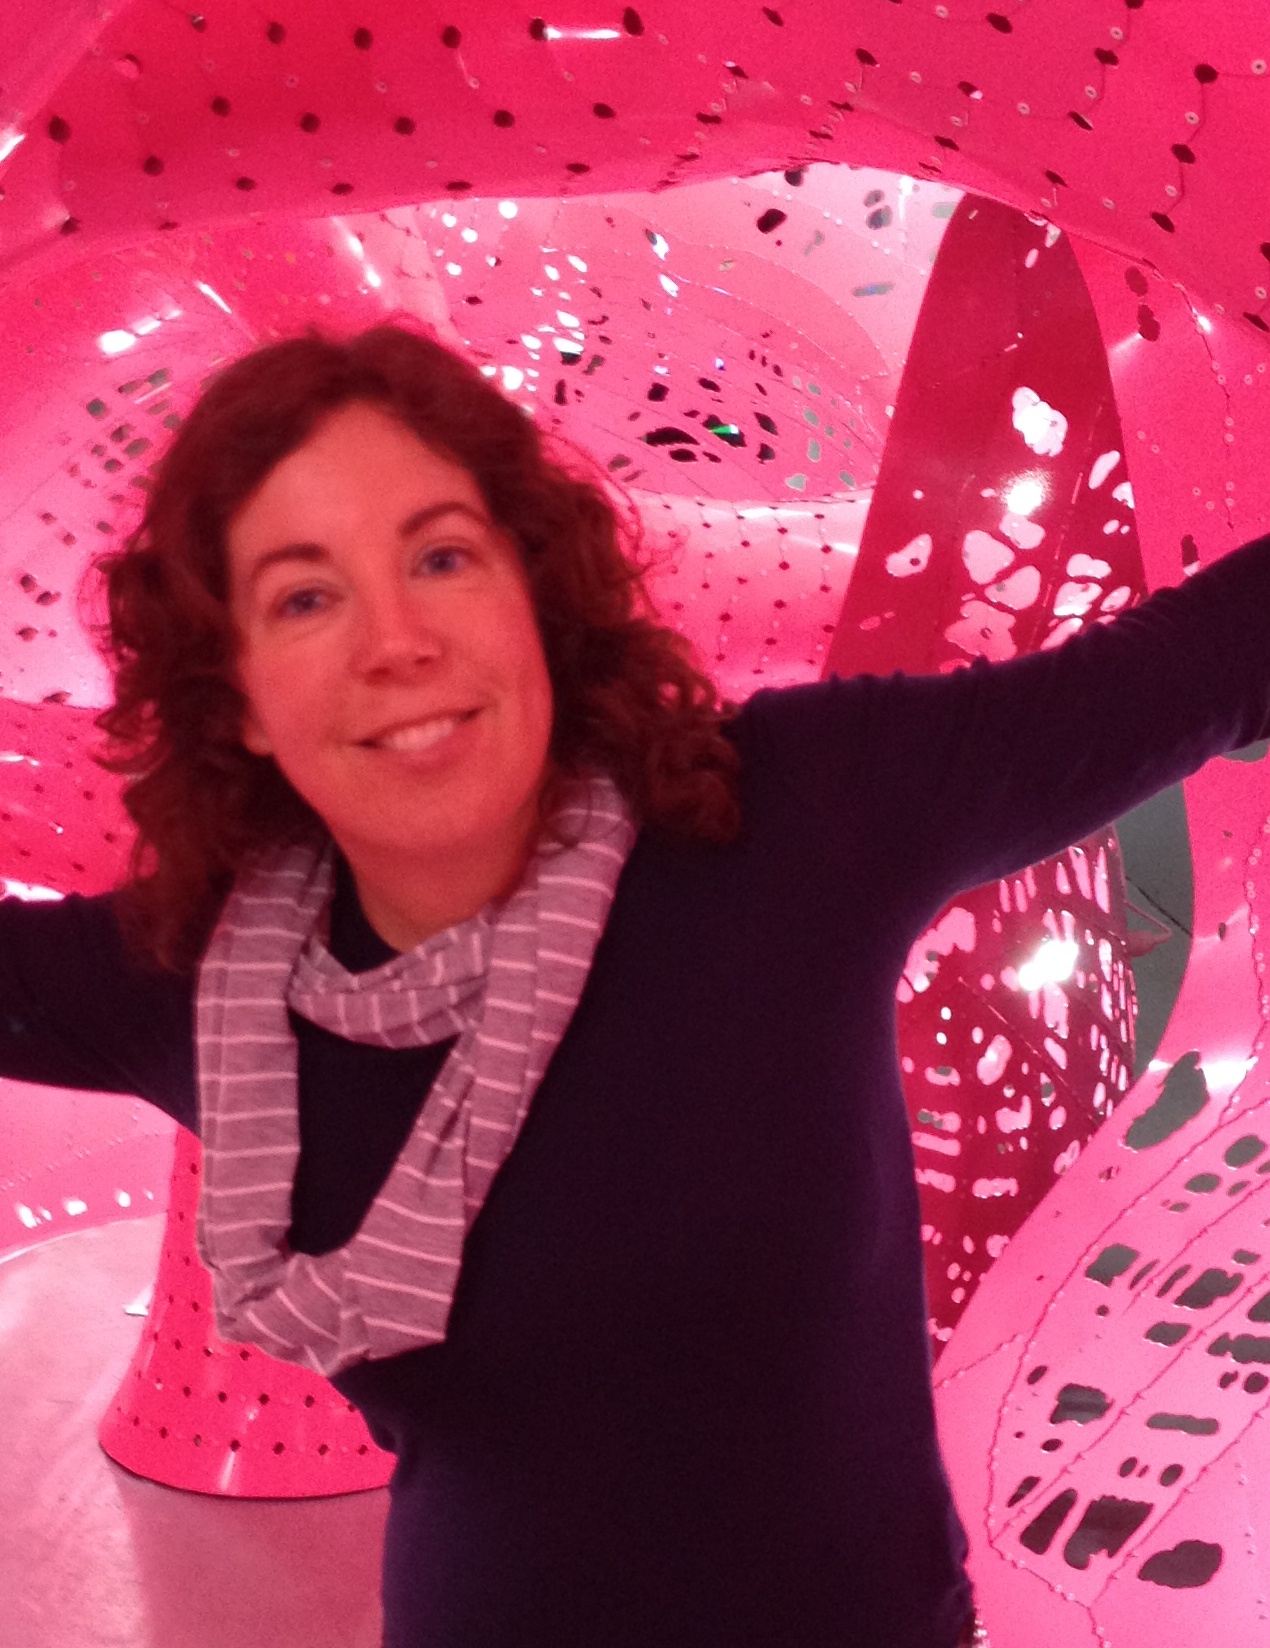 Claudette Bateup inside pink art installation